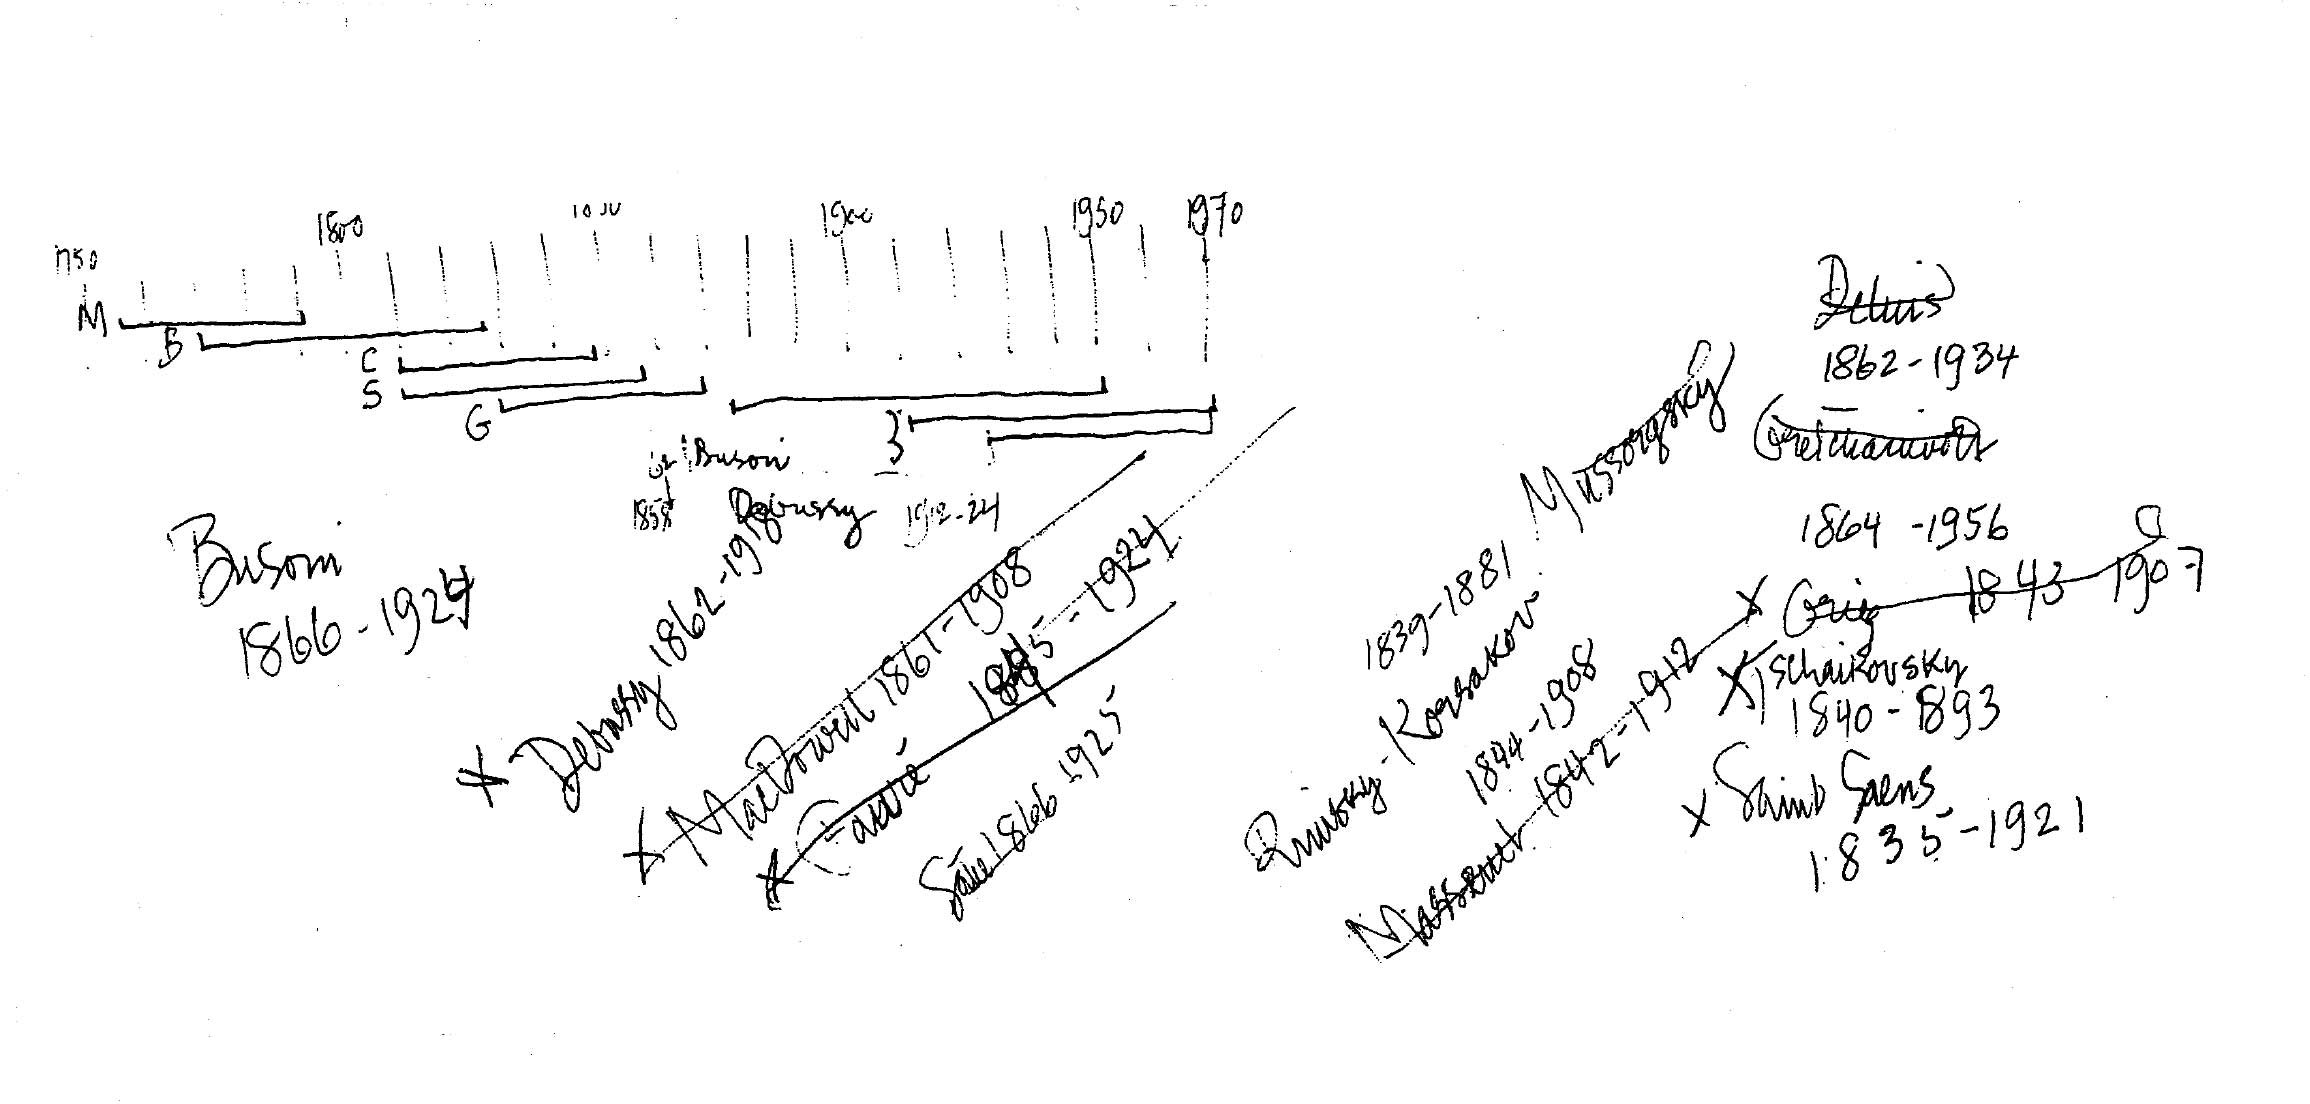 Una timeline dei compositori utilizzati in HPSCHD, con le relative date di nascita e morte. Sulla destra una serie di alternative per un’eventuale sostituzione di Ives. Manoscritto della John Cage Collection della New York Public Library di New York.